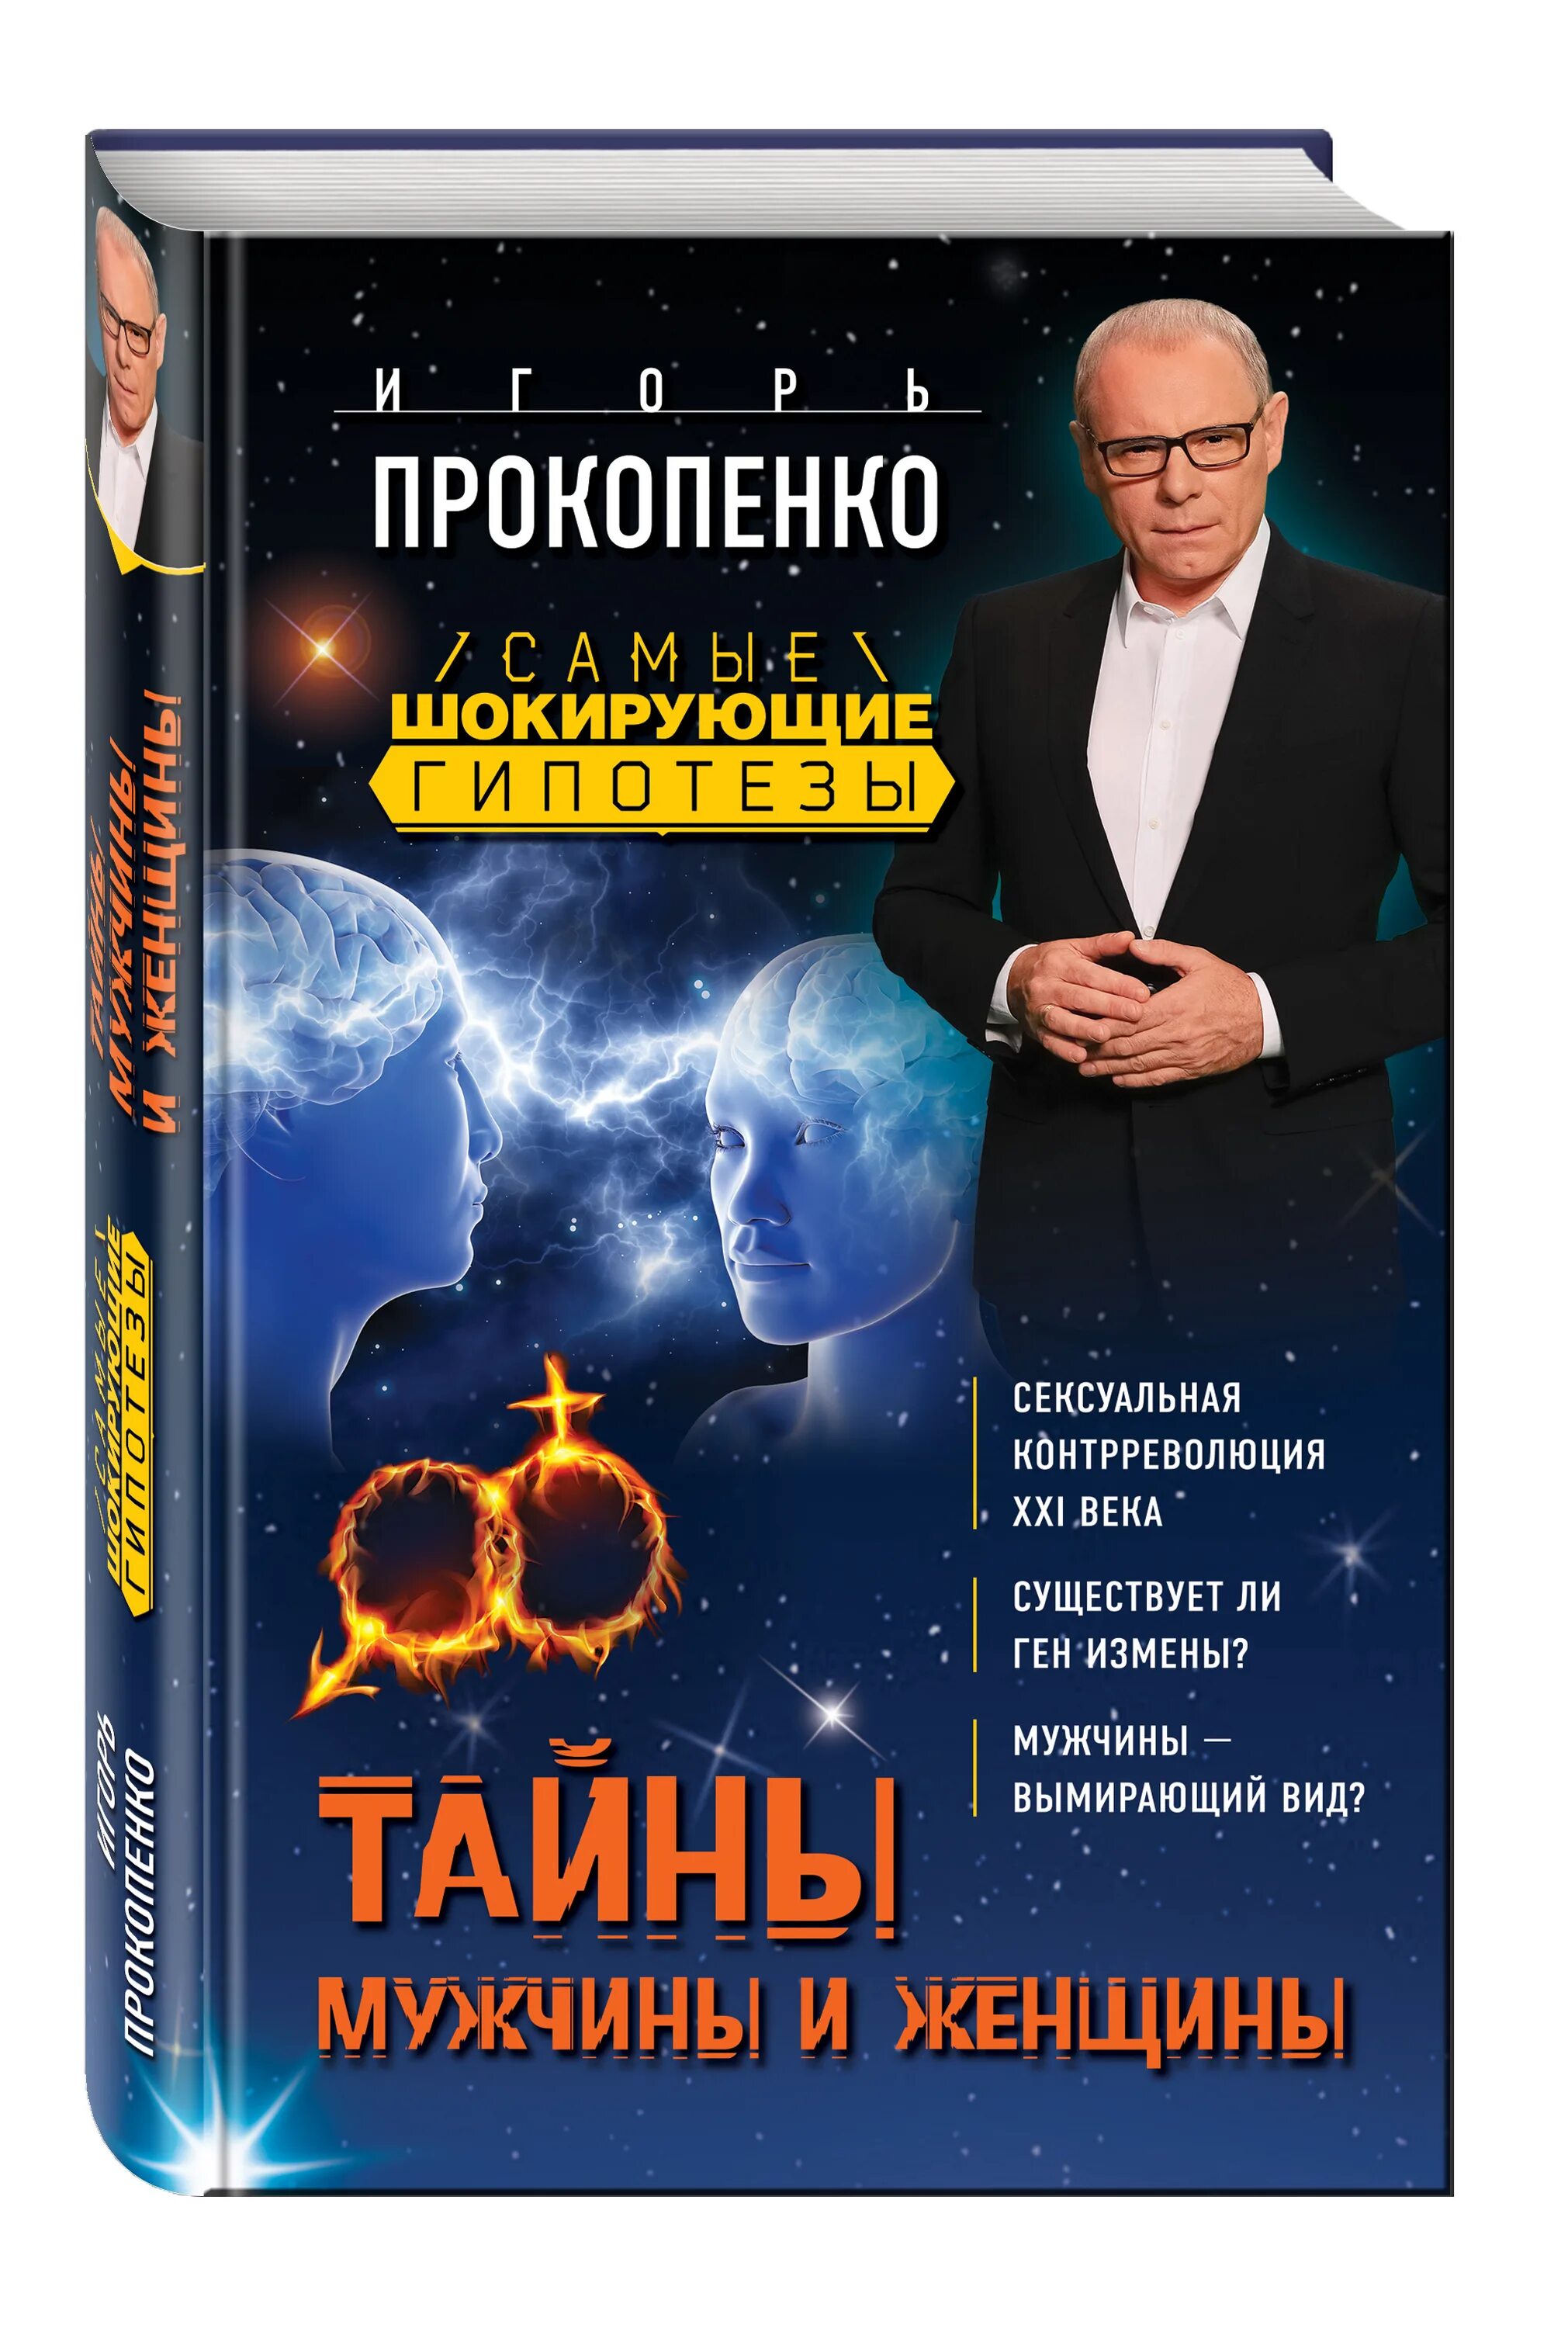 Тайны гипотезы. Прокопенко и. тайны мужчины и женщины. Самые шокирующие гипотезы с Игорем Прокопенко. Тайны мужчины и женщины книга.